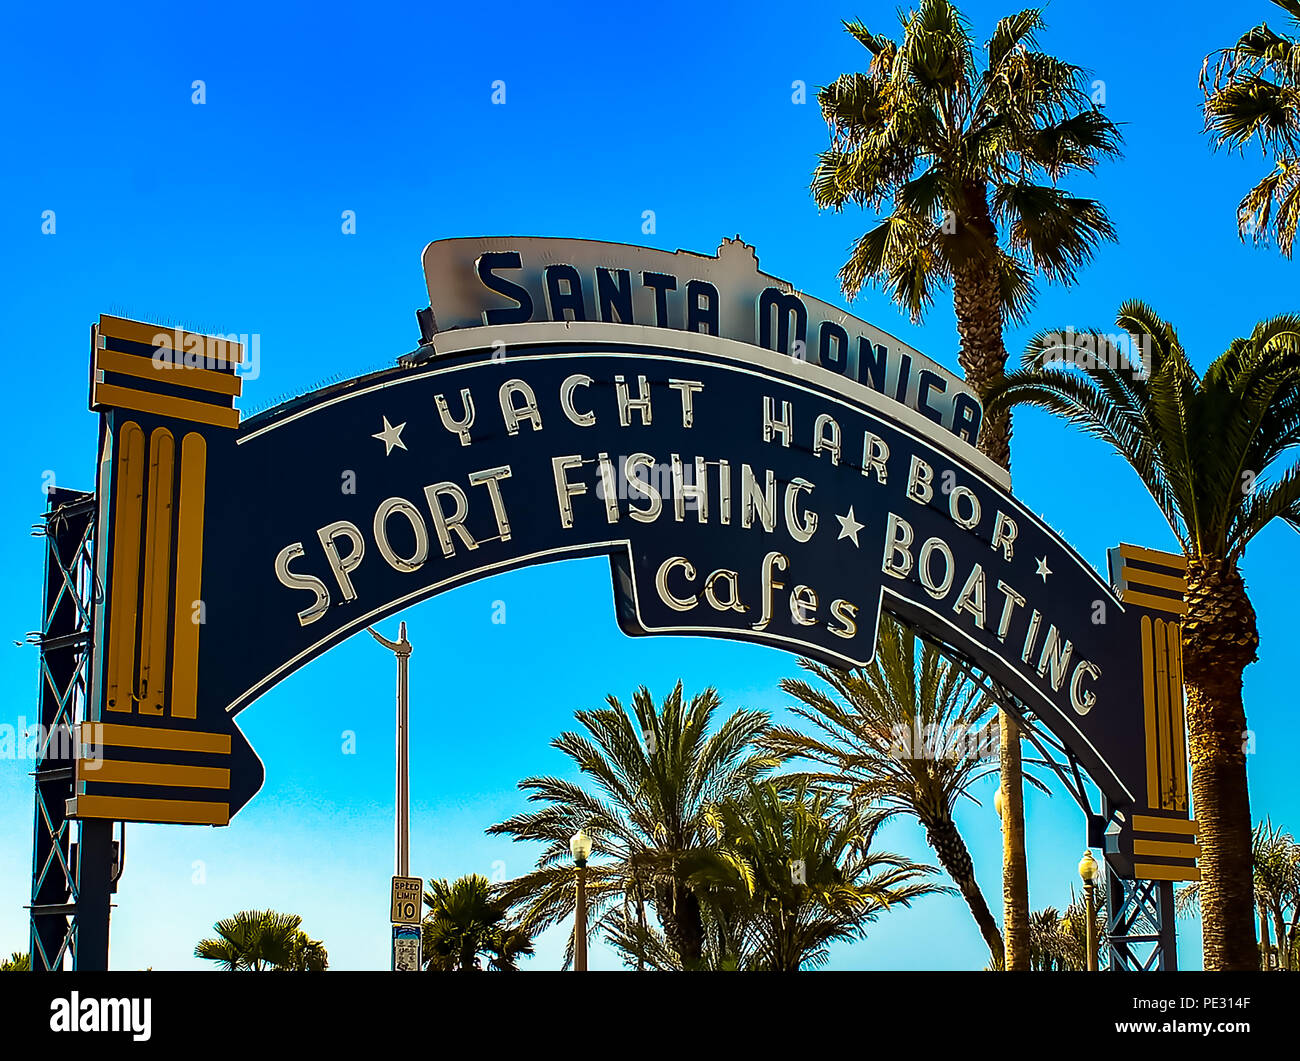 The iconic Santa Monica Pier sign in Santa Monica, California Stock Photo